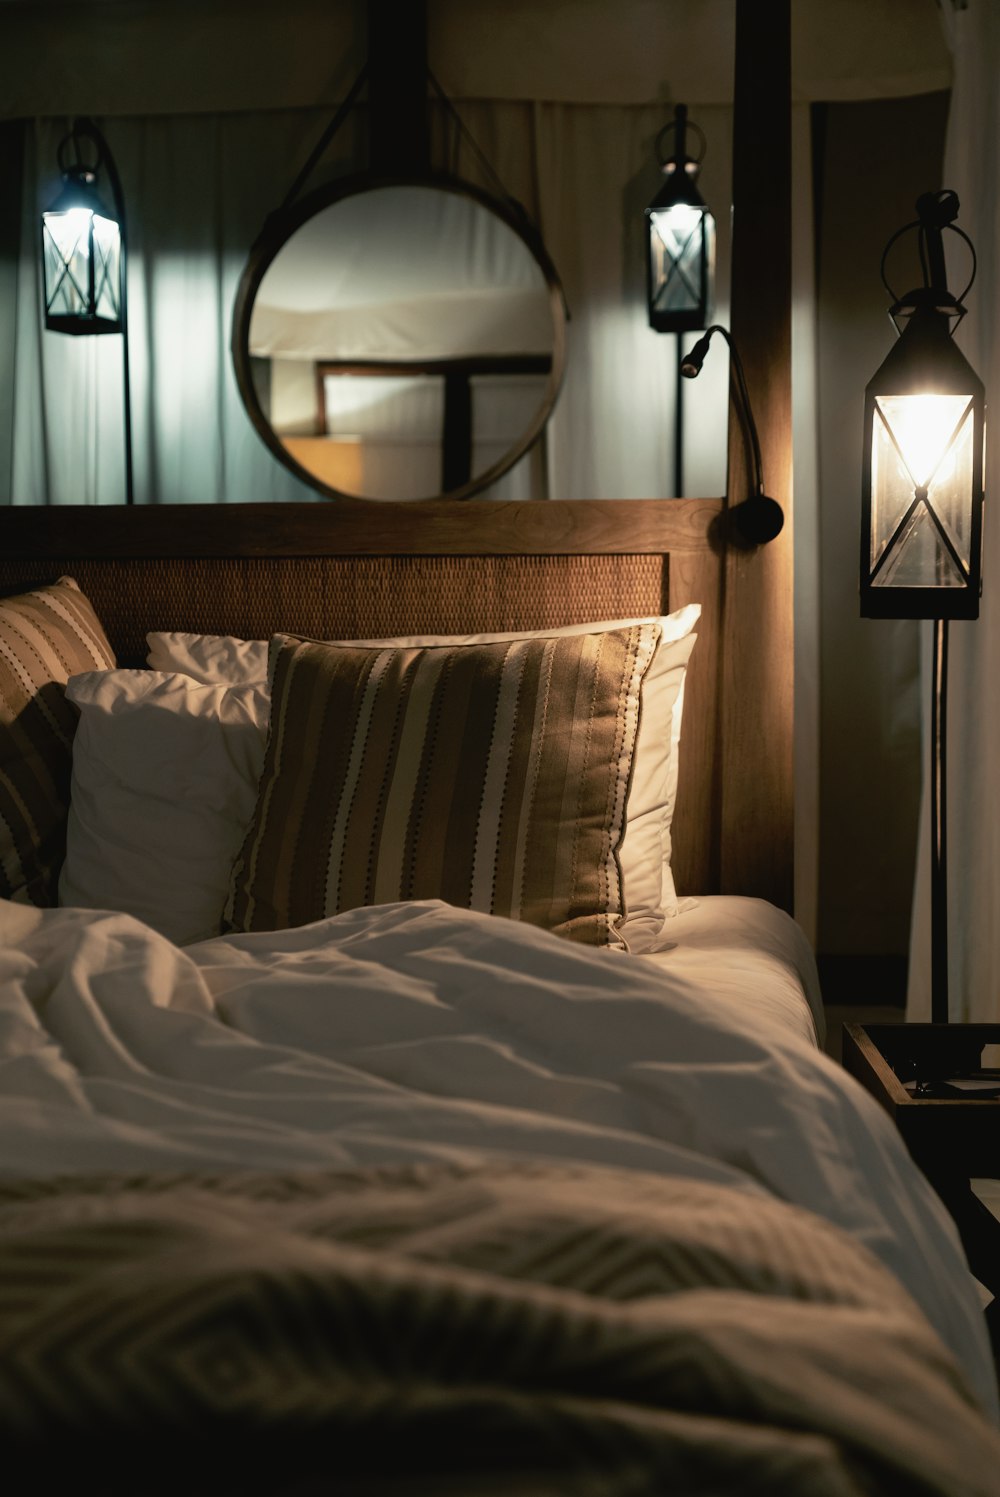 침대에 여러 가지 빛깔의 베개와 방 안의 조명이 켜진 펜던트 램프